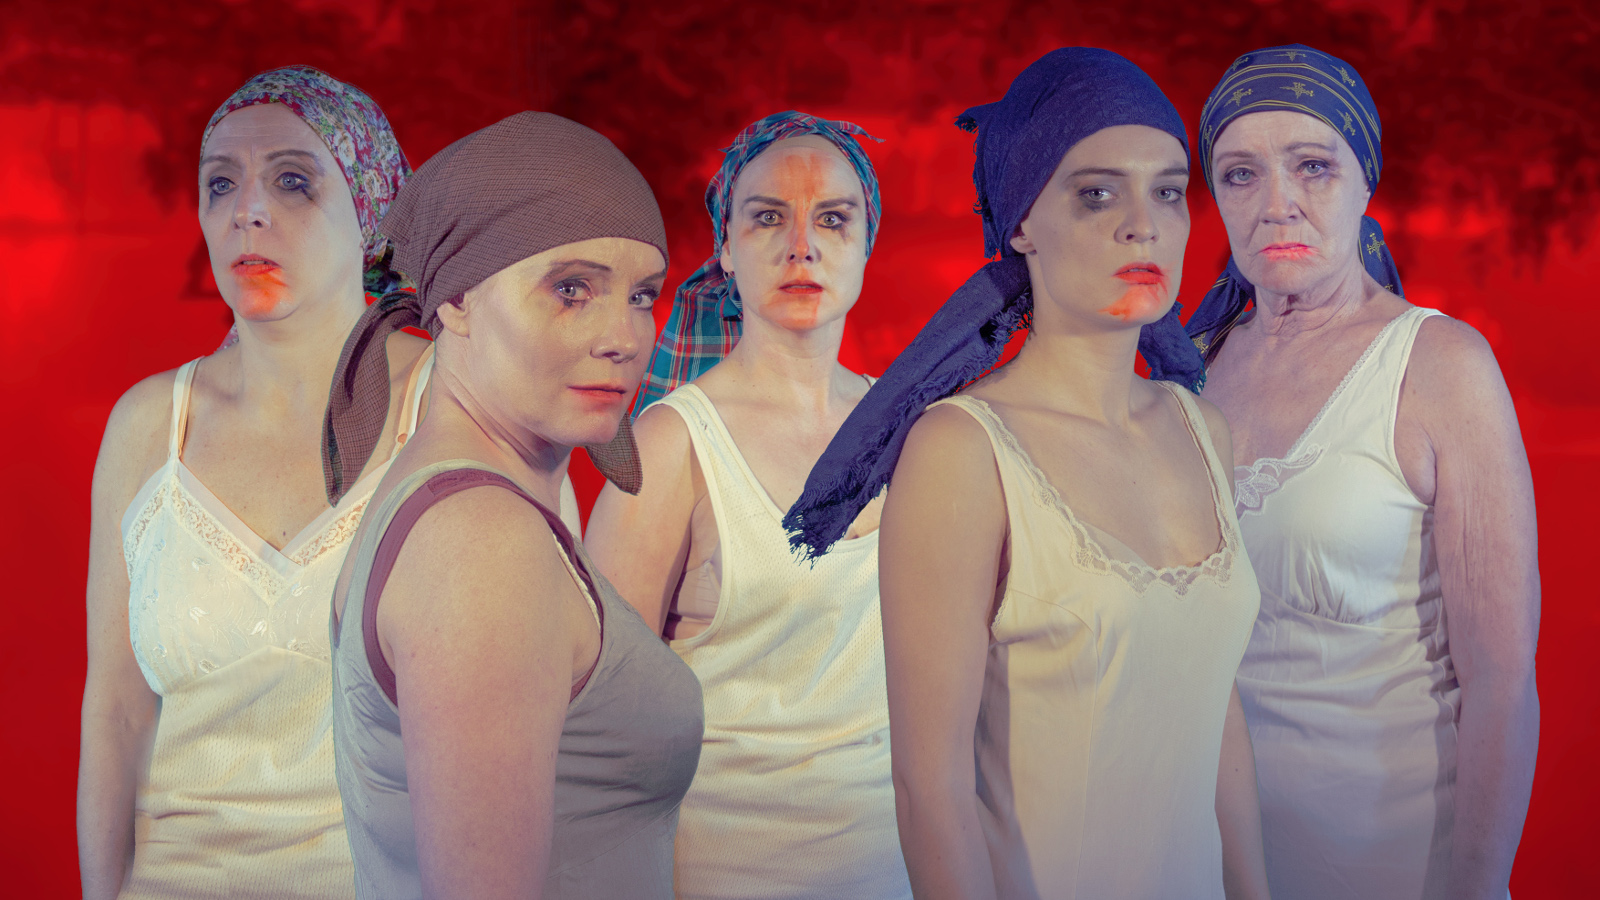 Kuvassa on viisi naista, joilla tiukat huivit päässään ja vaaleat hihattomat paidat päällään.Heillä on punaista huulipunaa.